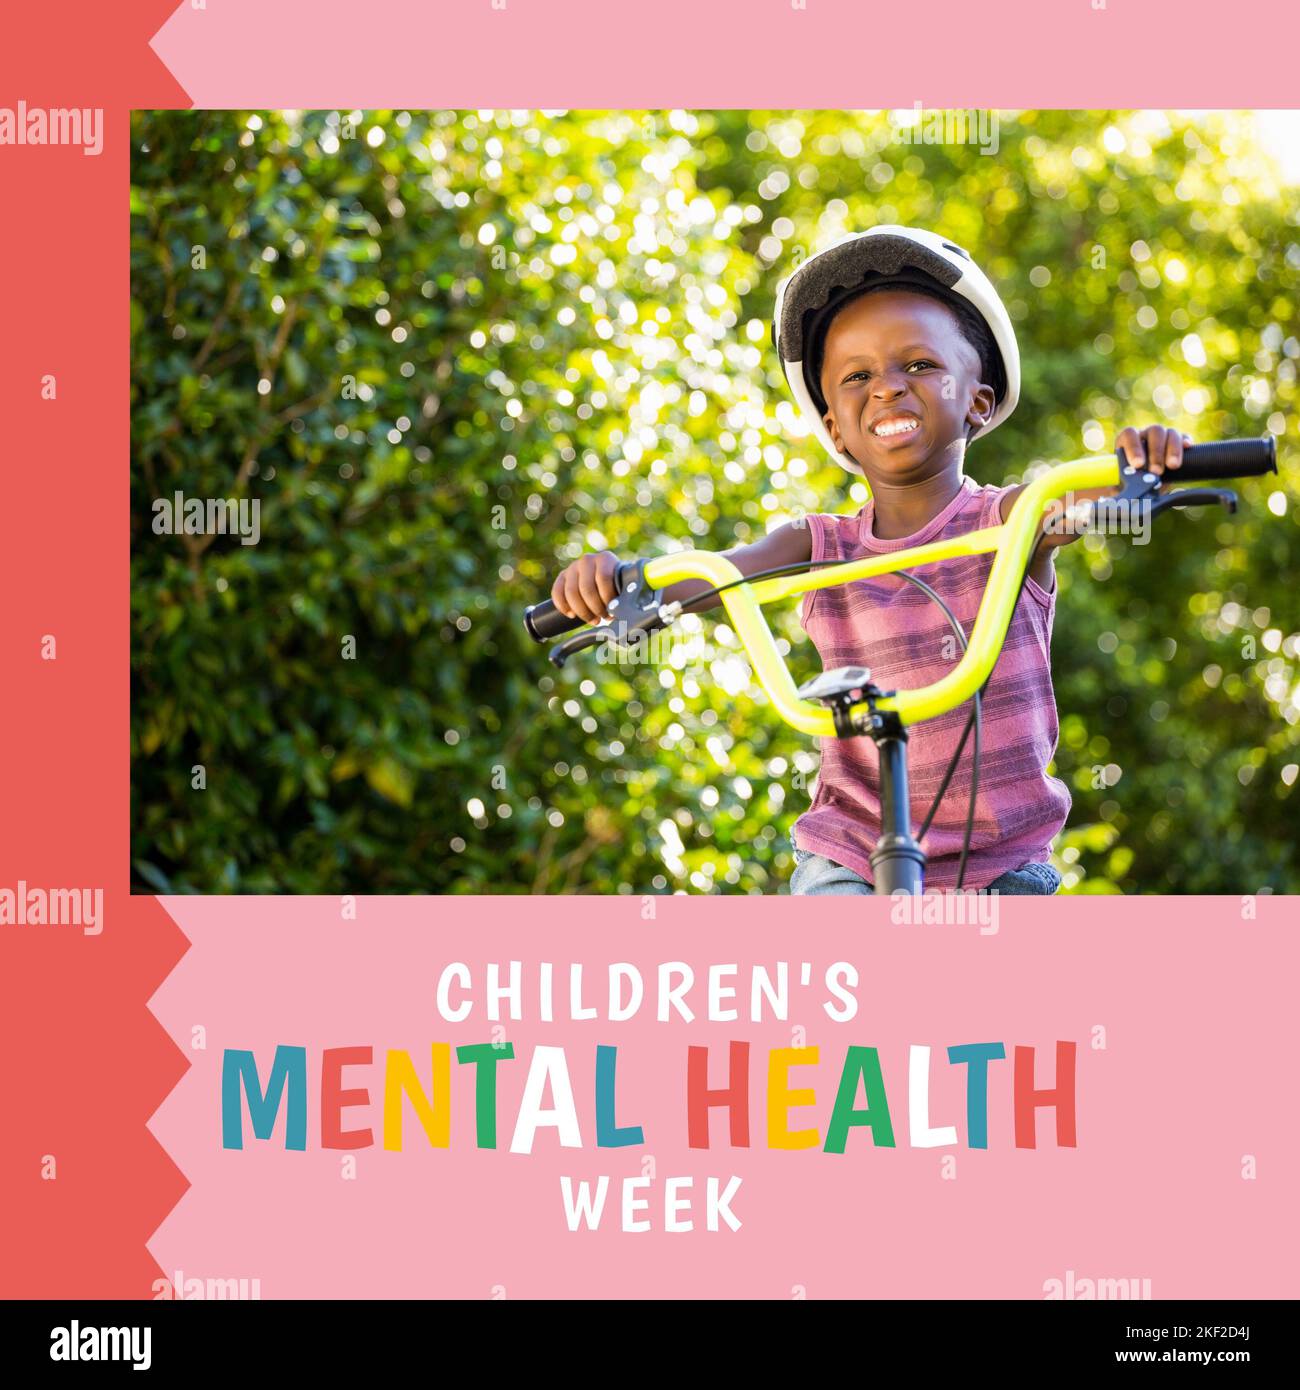 Zusammensetzung der Woche für psychische Gesundheit von Kindern Text und Junge auf dem Fahrrad Stockfoto